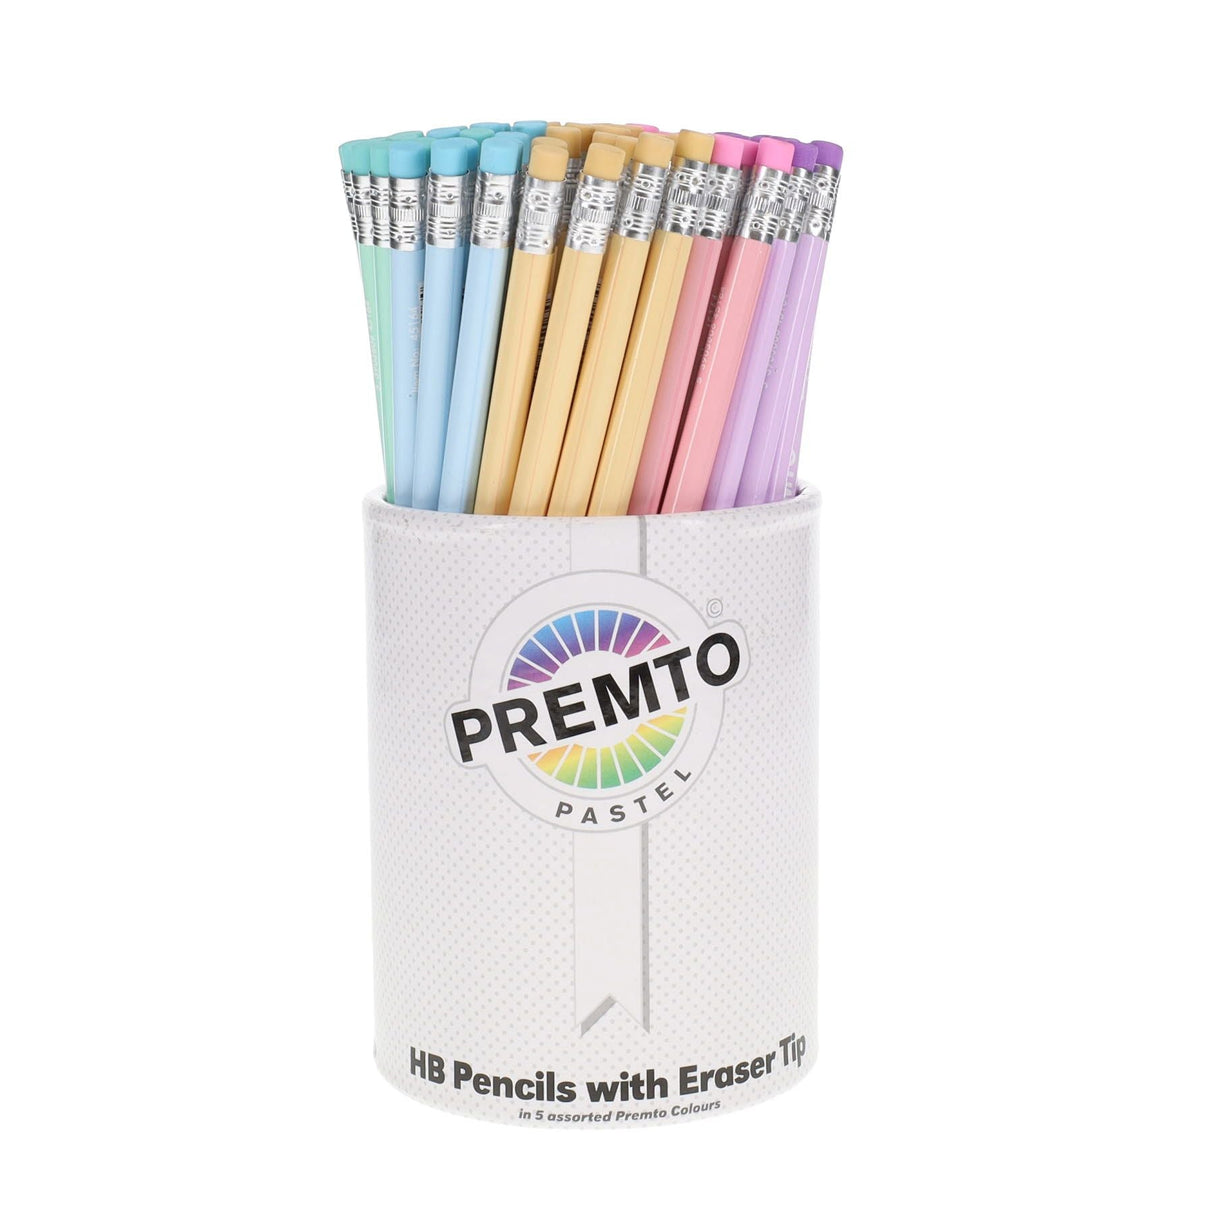 Premto Pastel HB Pencils With Eraser - Tub of 100 | Stationery Shop UK